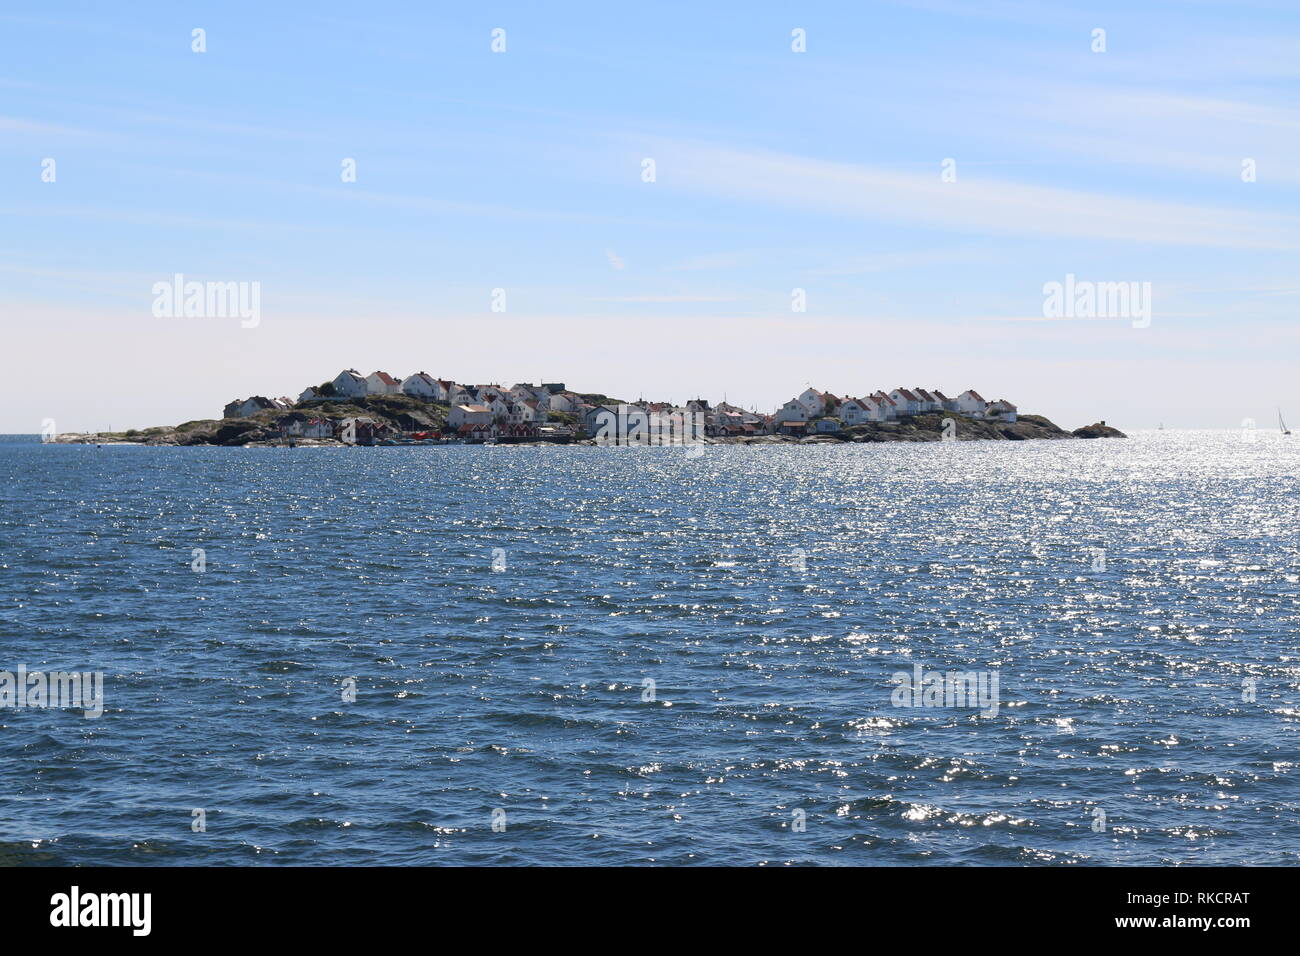 Die Insel Åstol an der Westküste Schwedens - Blick von der Fähre auf Åstol mit seinen Häusern und dem kleinen Naturhafen Stock Photo